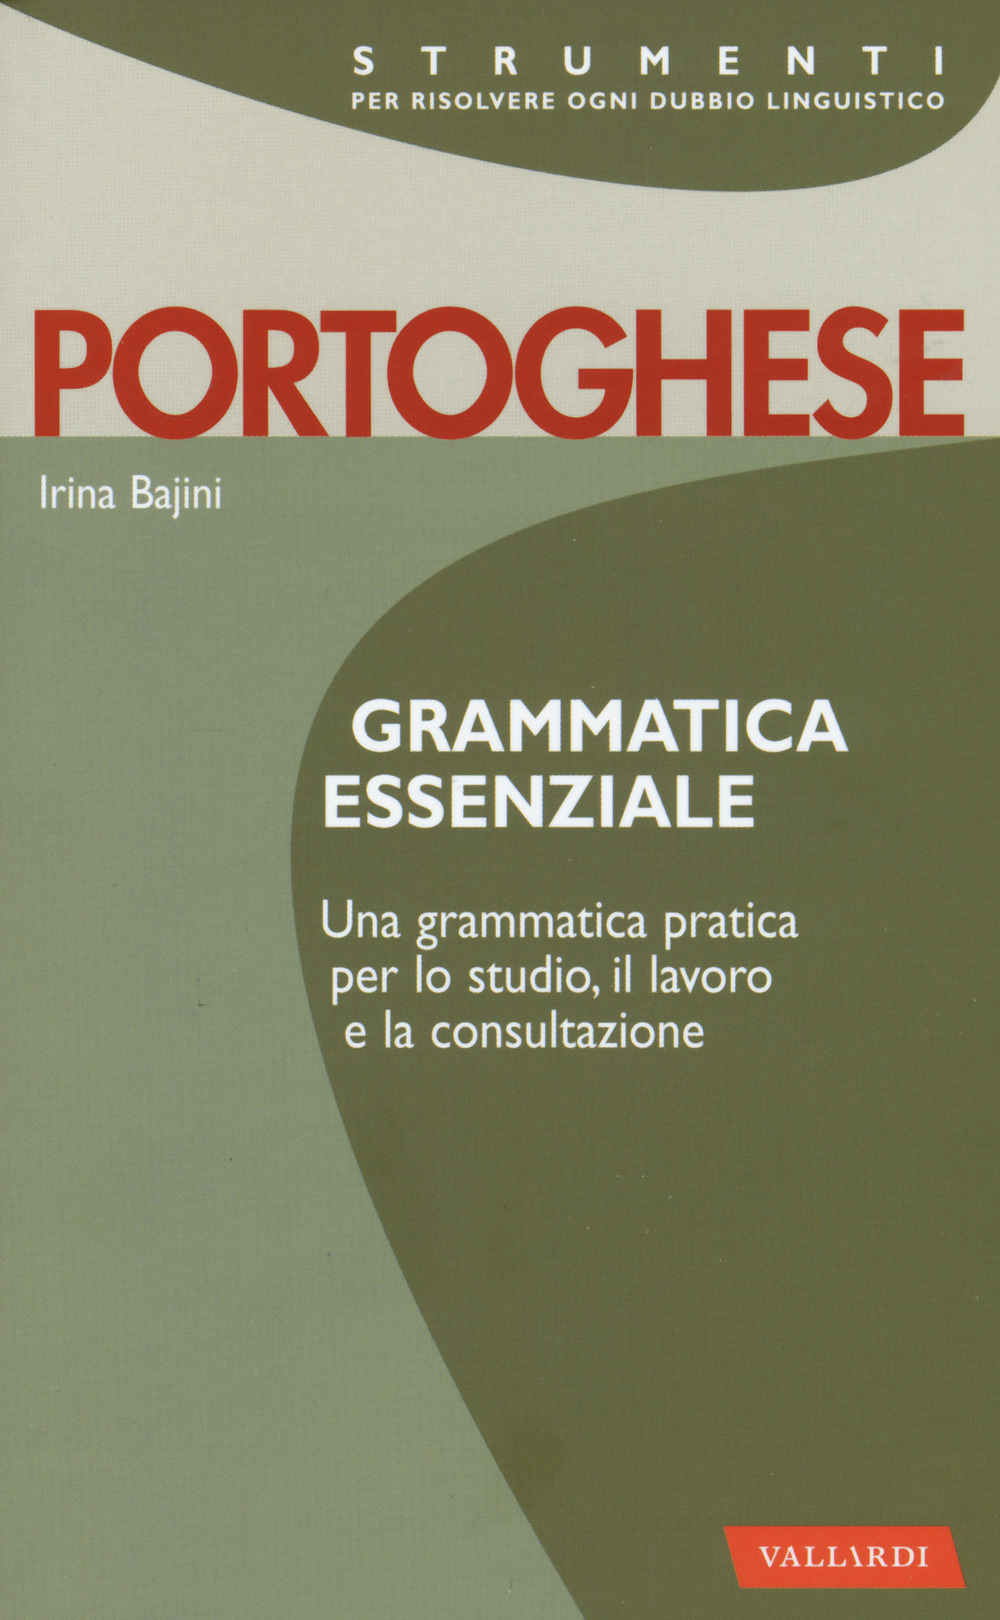 Image of Portoghese. Grammatica essenziale